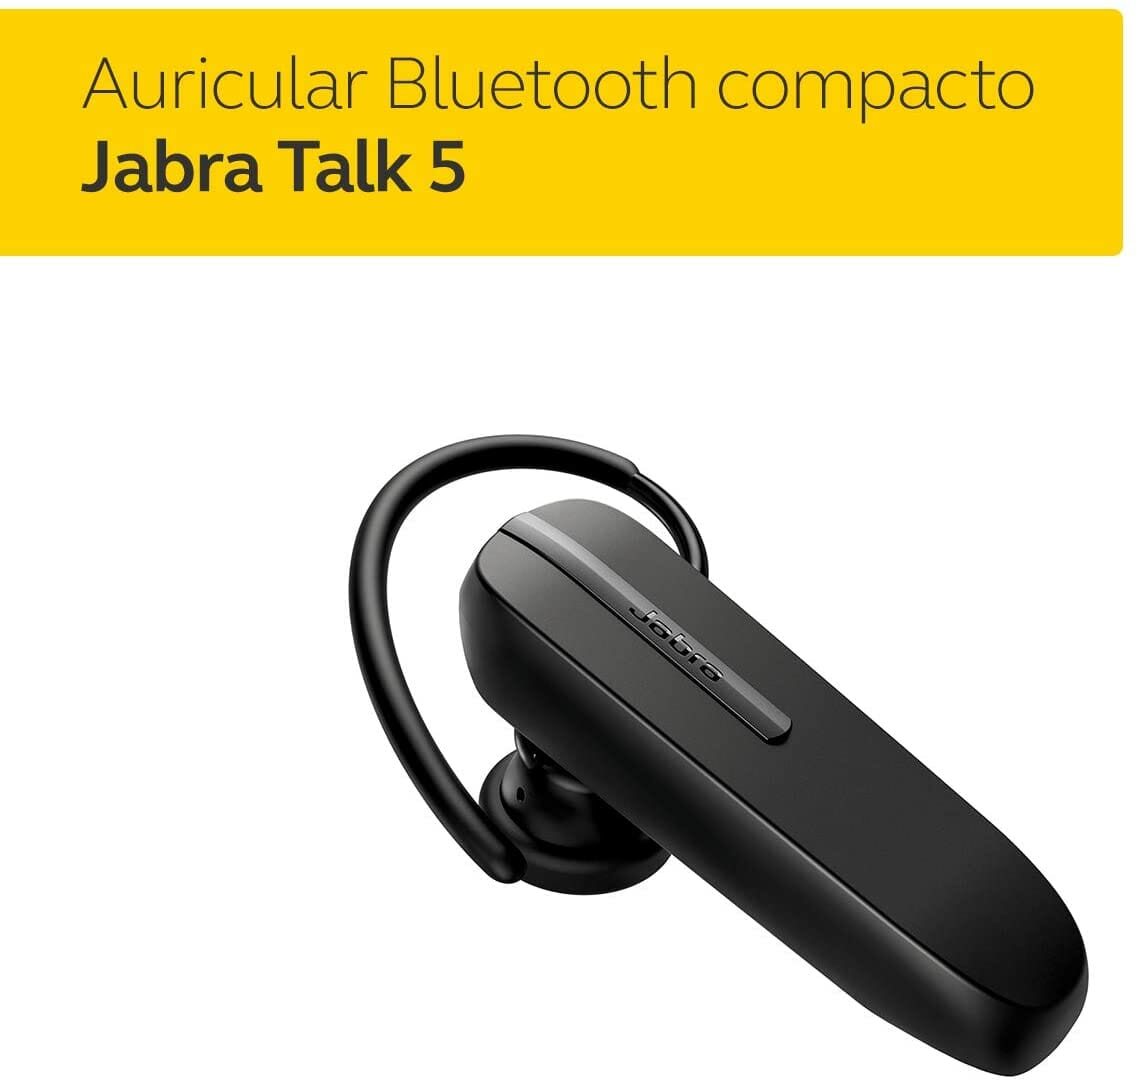 Jabra Talk 5 Auricular Bluetooth